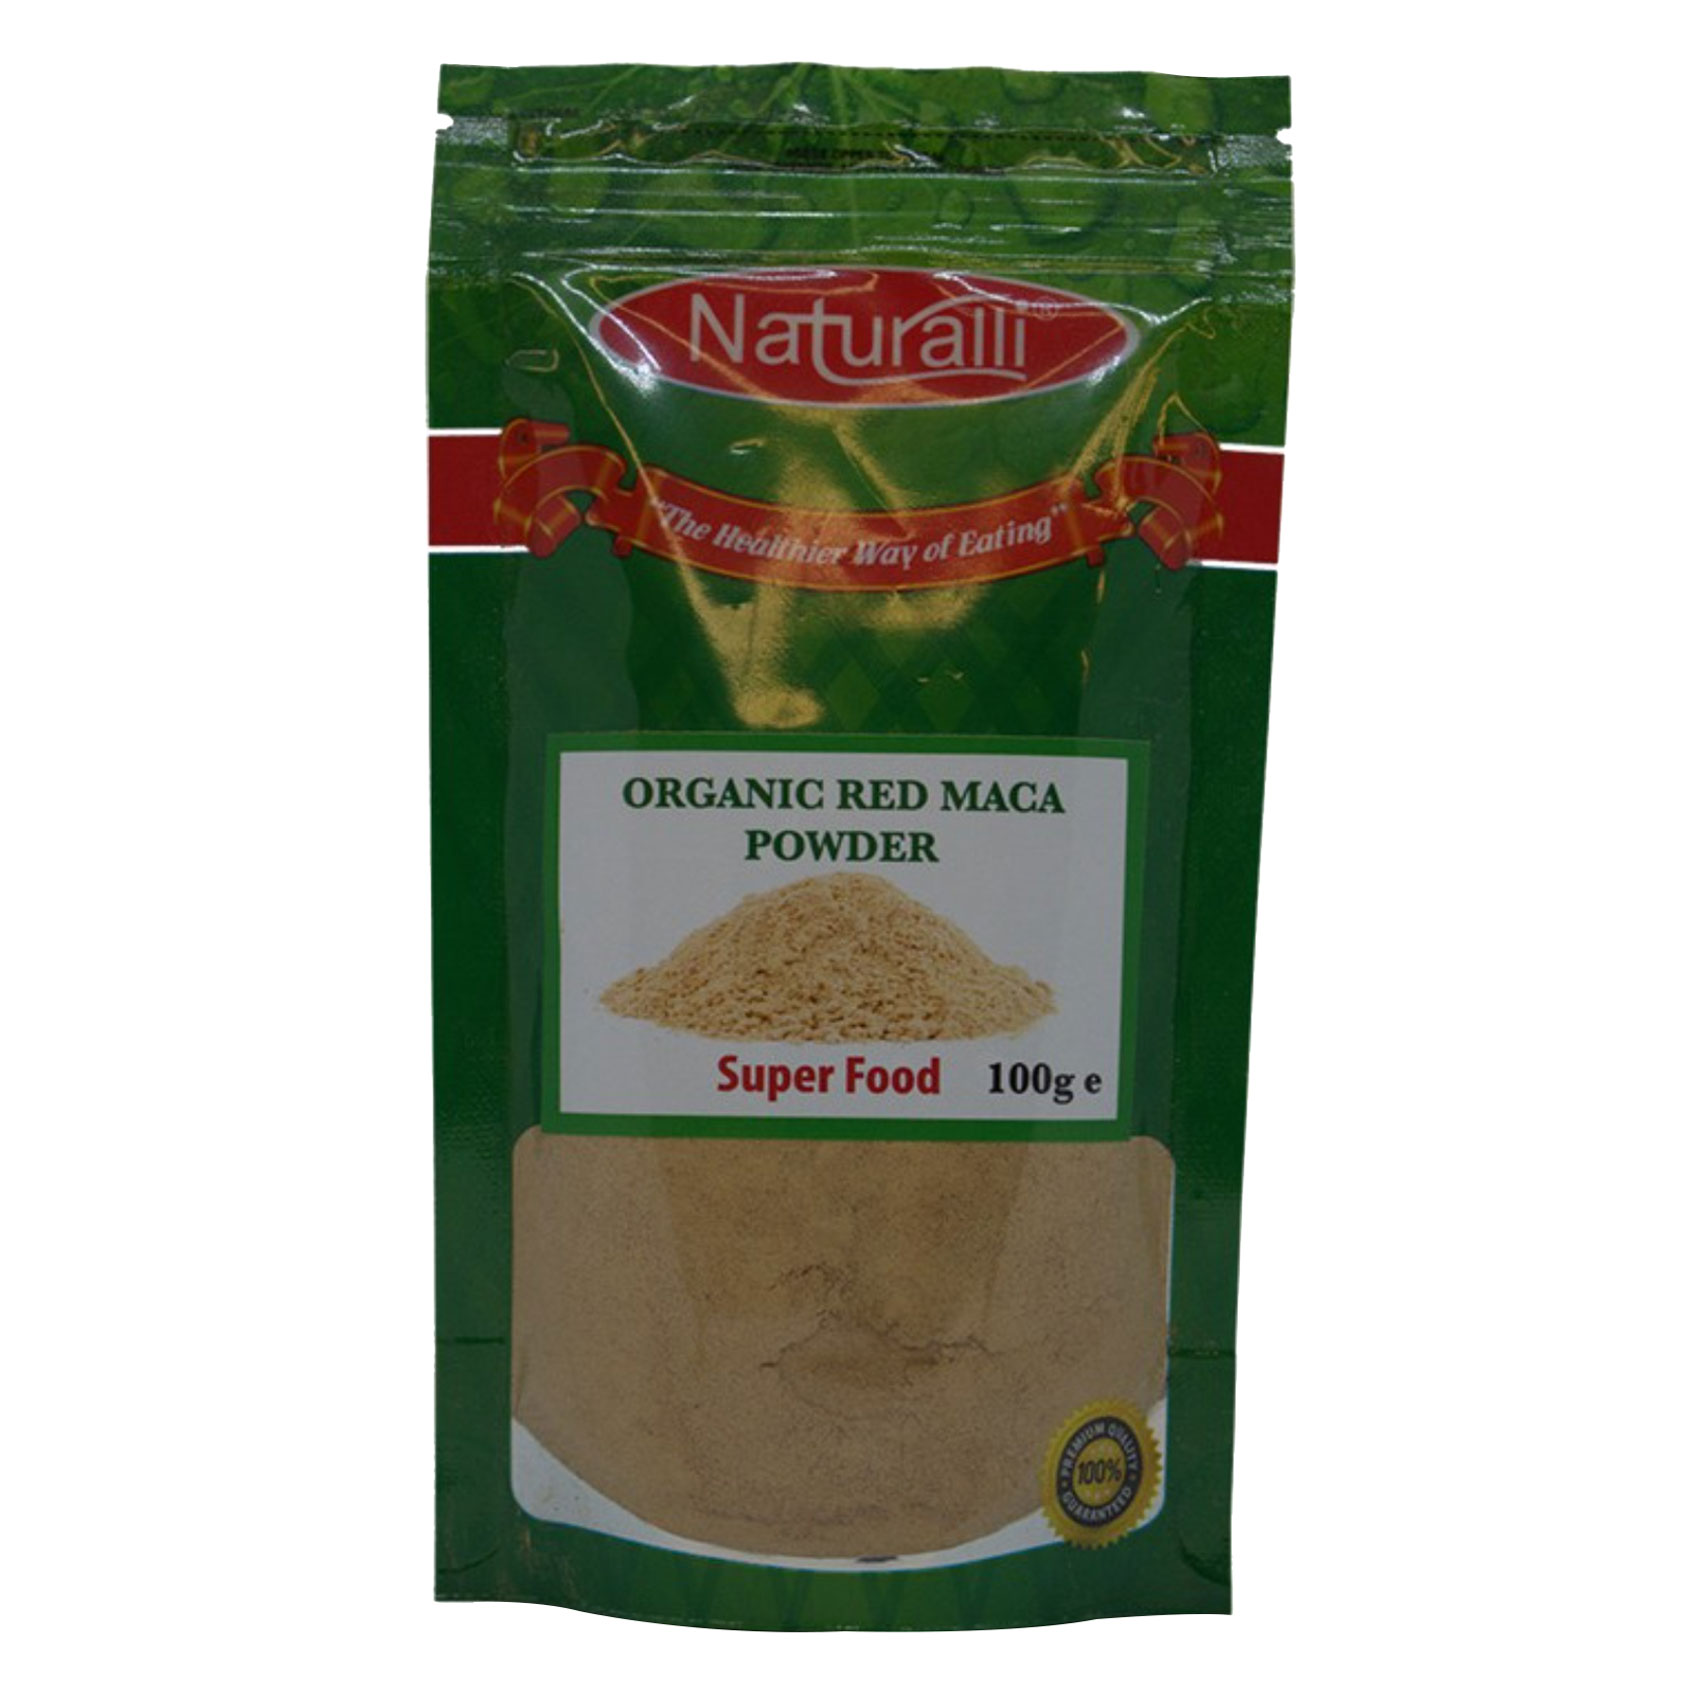 Naturalli Organic Red Maca Powder 100g